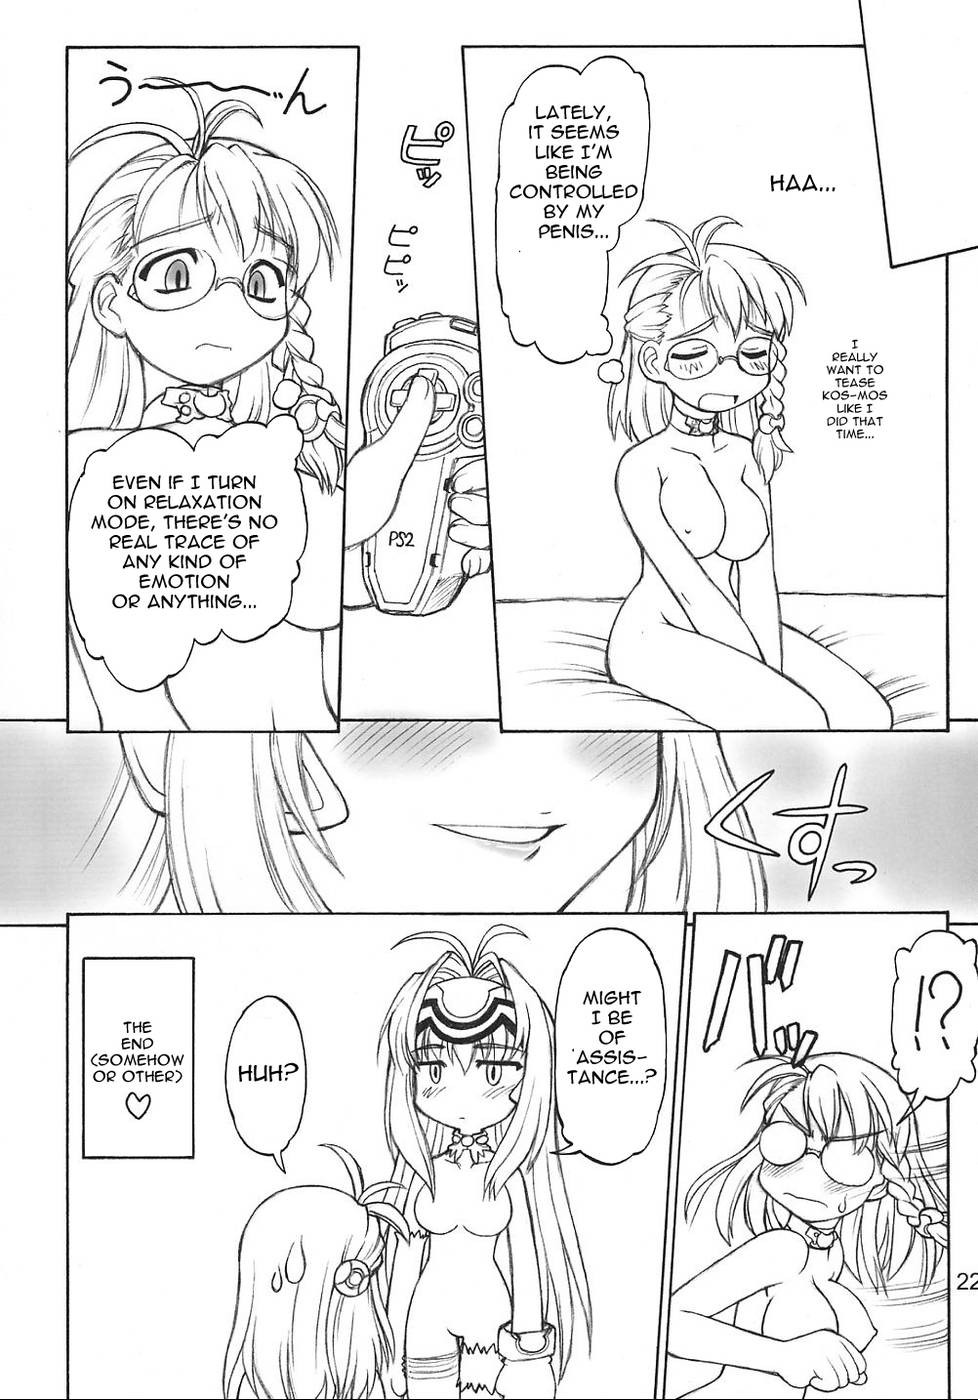 Futanari porn comic #69347347